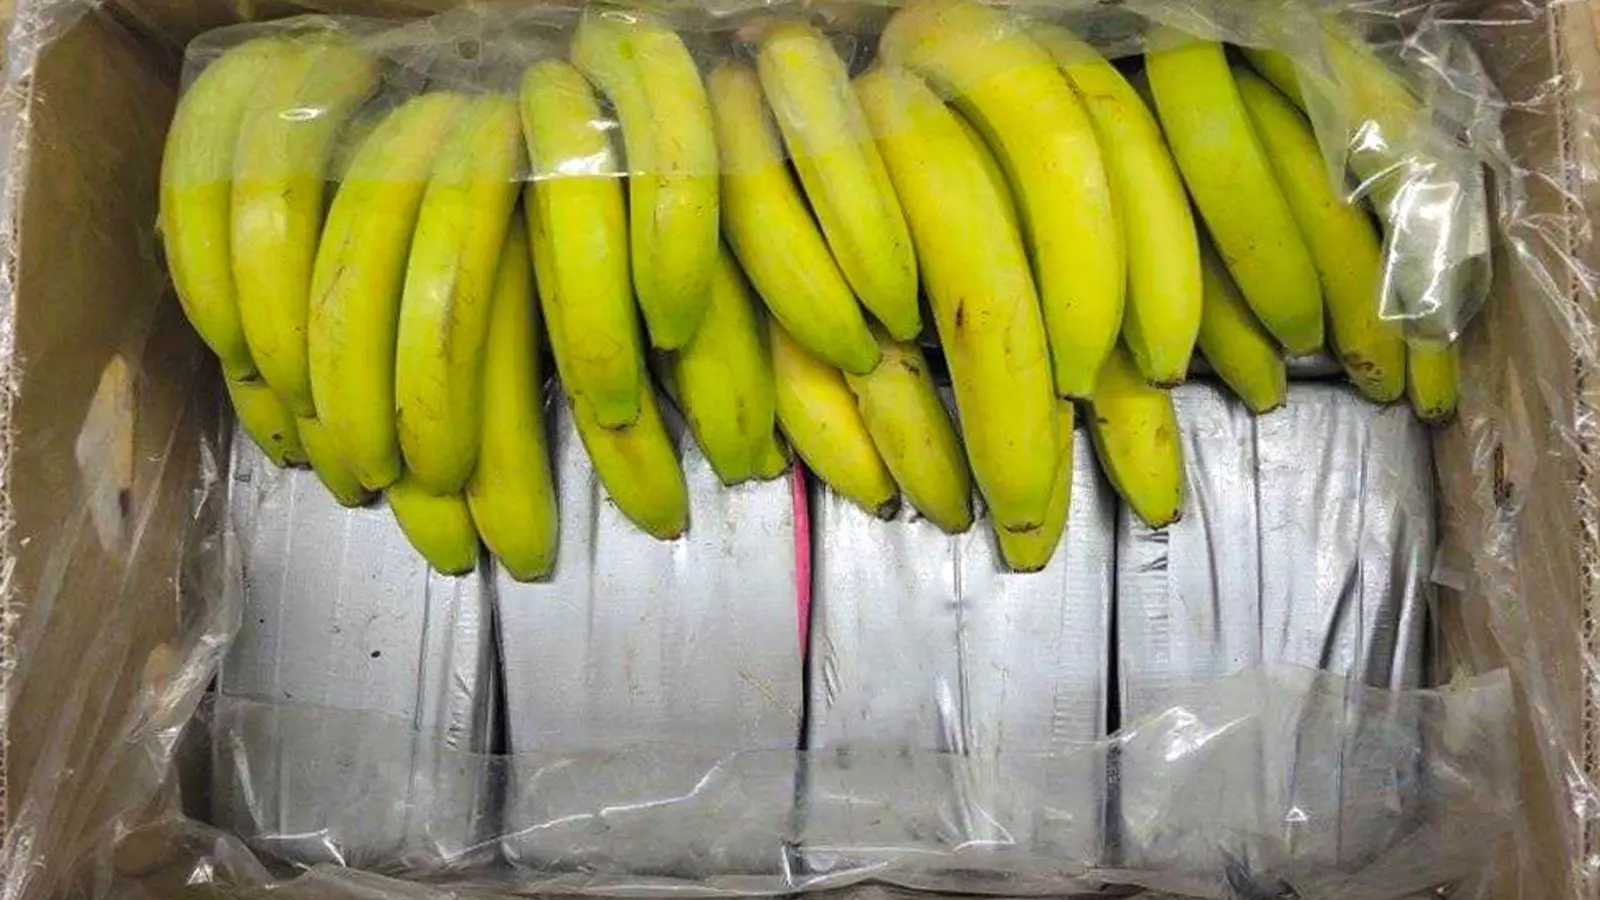 In Bananenkisten aus Ecuador sichergestelltes Kokain. (Foto: Landeskriminalamt Baden-Württemberg/dpa/Archiv)